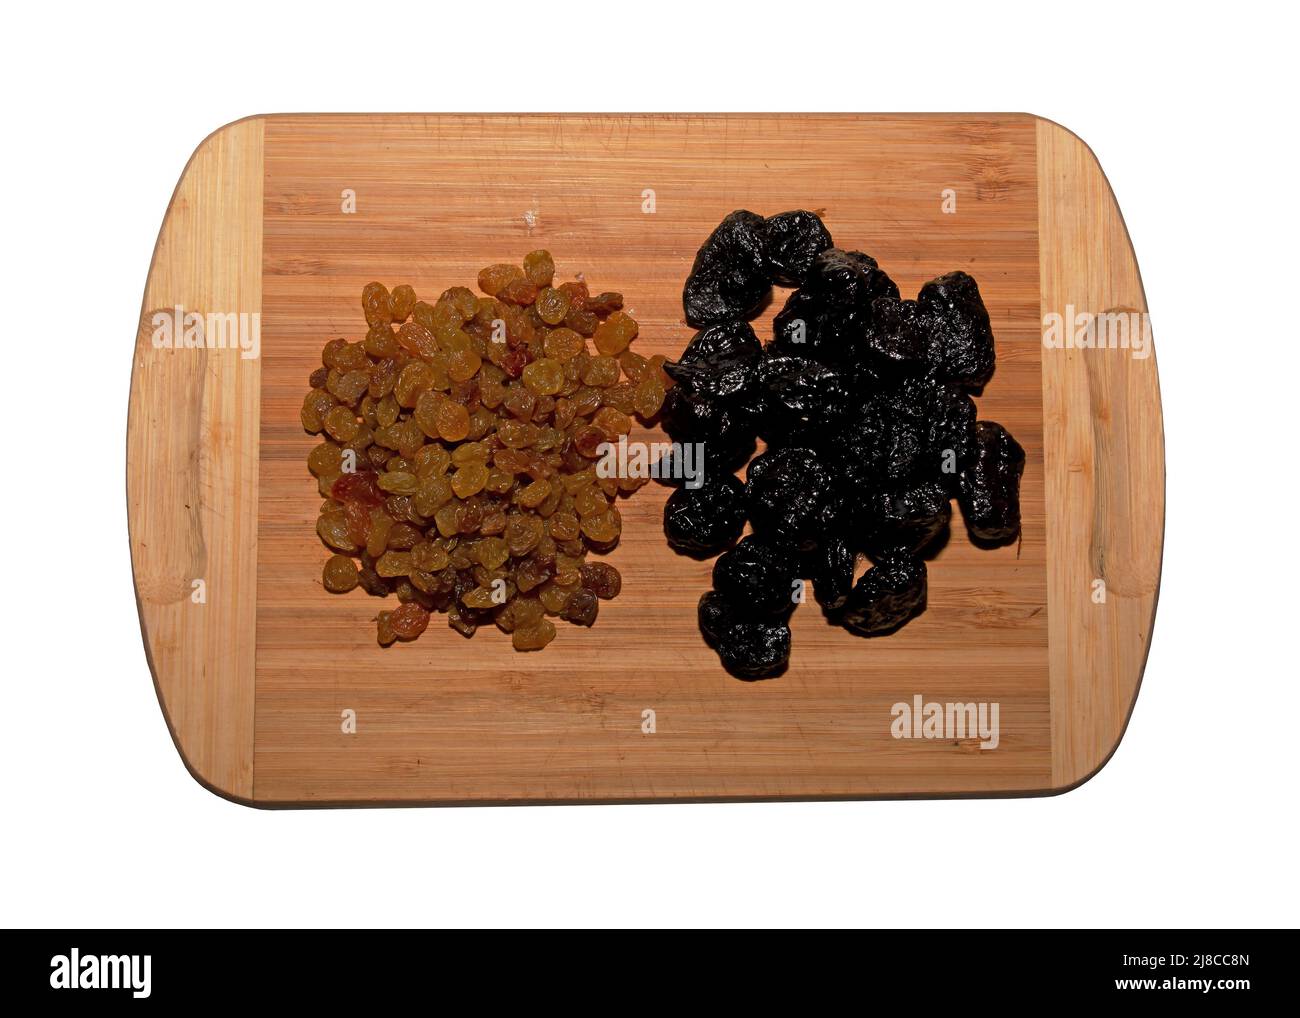 Una manciata di uvetta secca e prugne su un tavolo da cucina in legno. Sfondo di frutta secca. Concetto di cibo sano. Isolare su sfondo bianco. Foto Stock